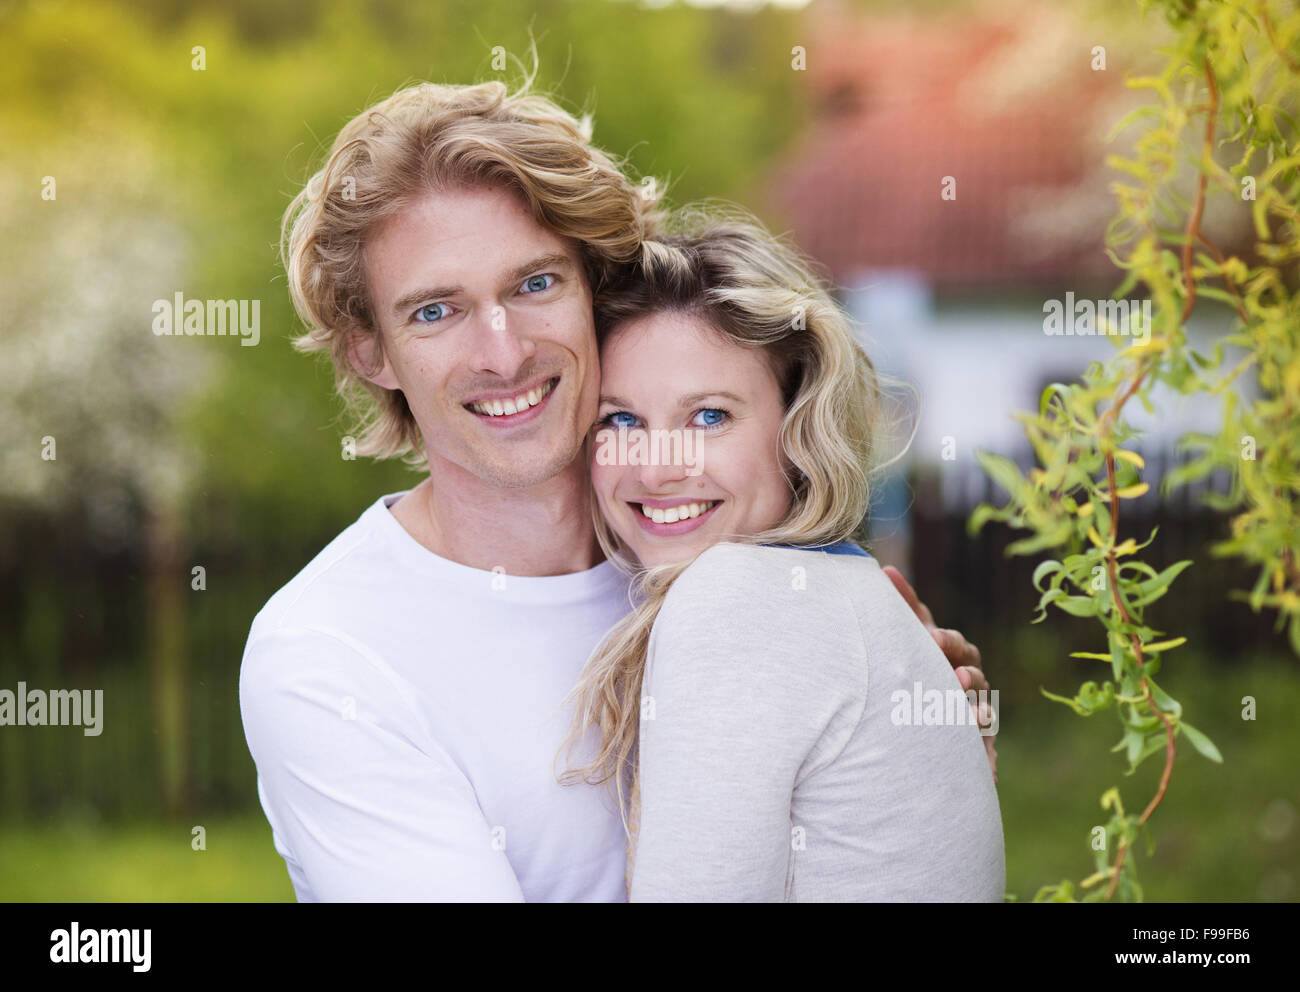 Frühling im freien Porträt des jungen Brautpaares Stockfoto